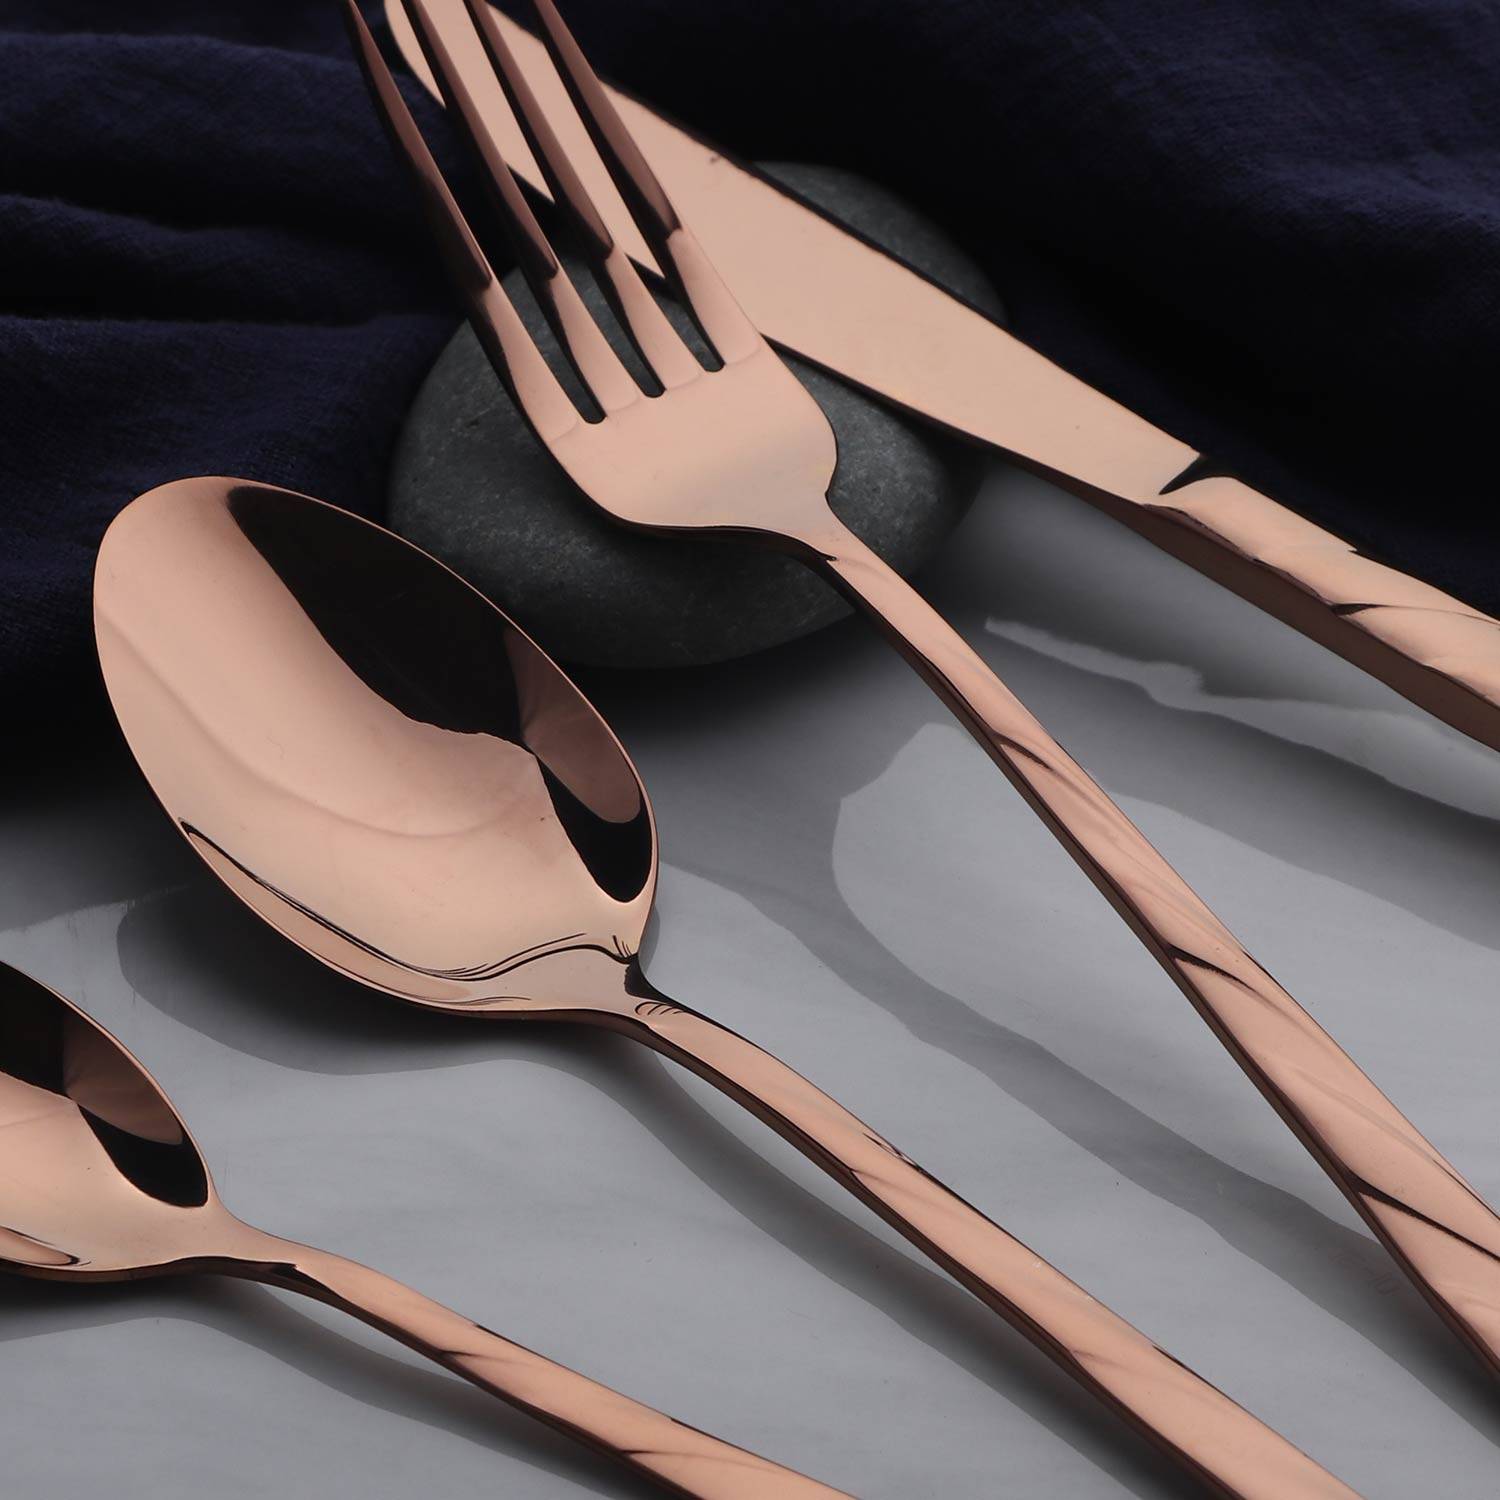 cucchiai e forchette Berglander-6 pezzi Forchette da tavola in acciaio inossidabile posate forchette e cucchiai 